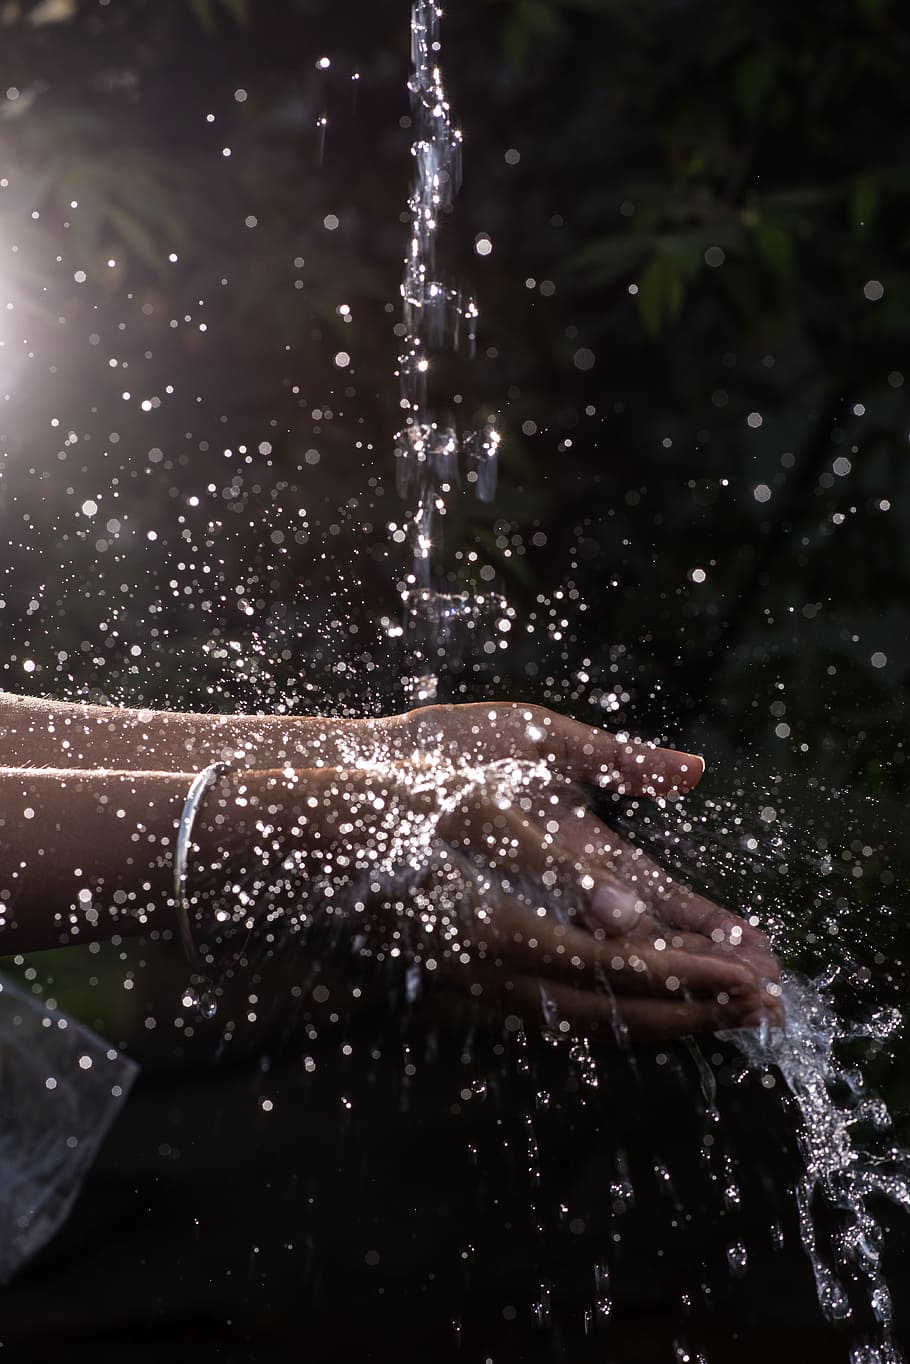 Human Hand Under Pouring Water, refreshing, splash, splashing, HD wallpaper